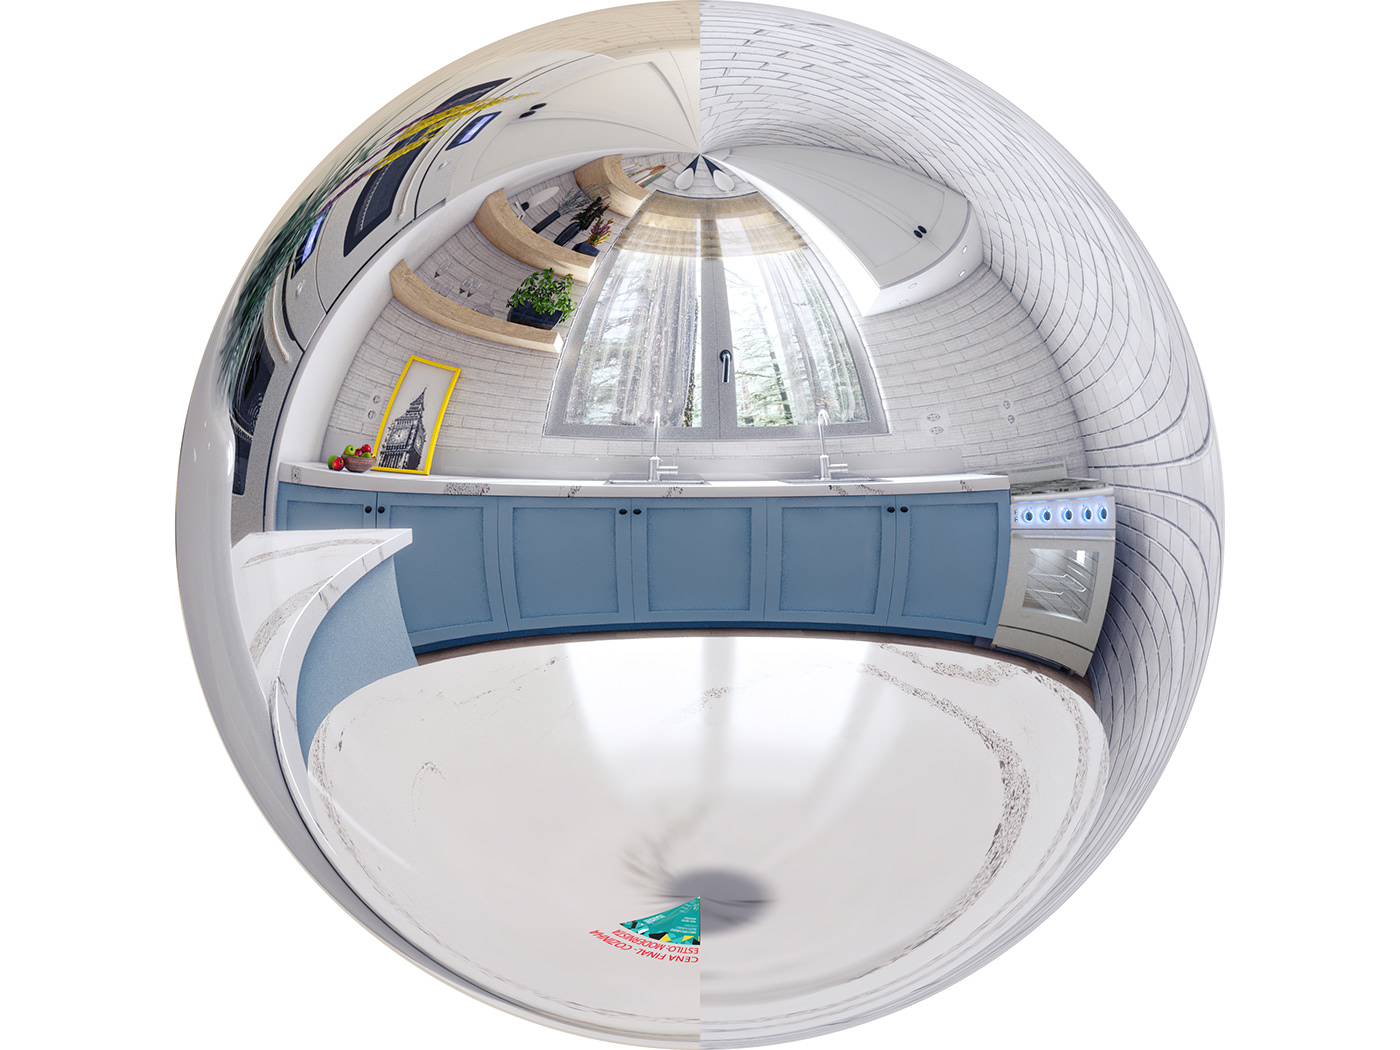 3D archviz arquitectura CGI interior design  kitchen Modern Design Render SketchUP vray